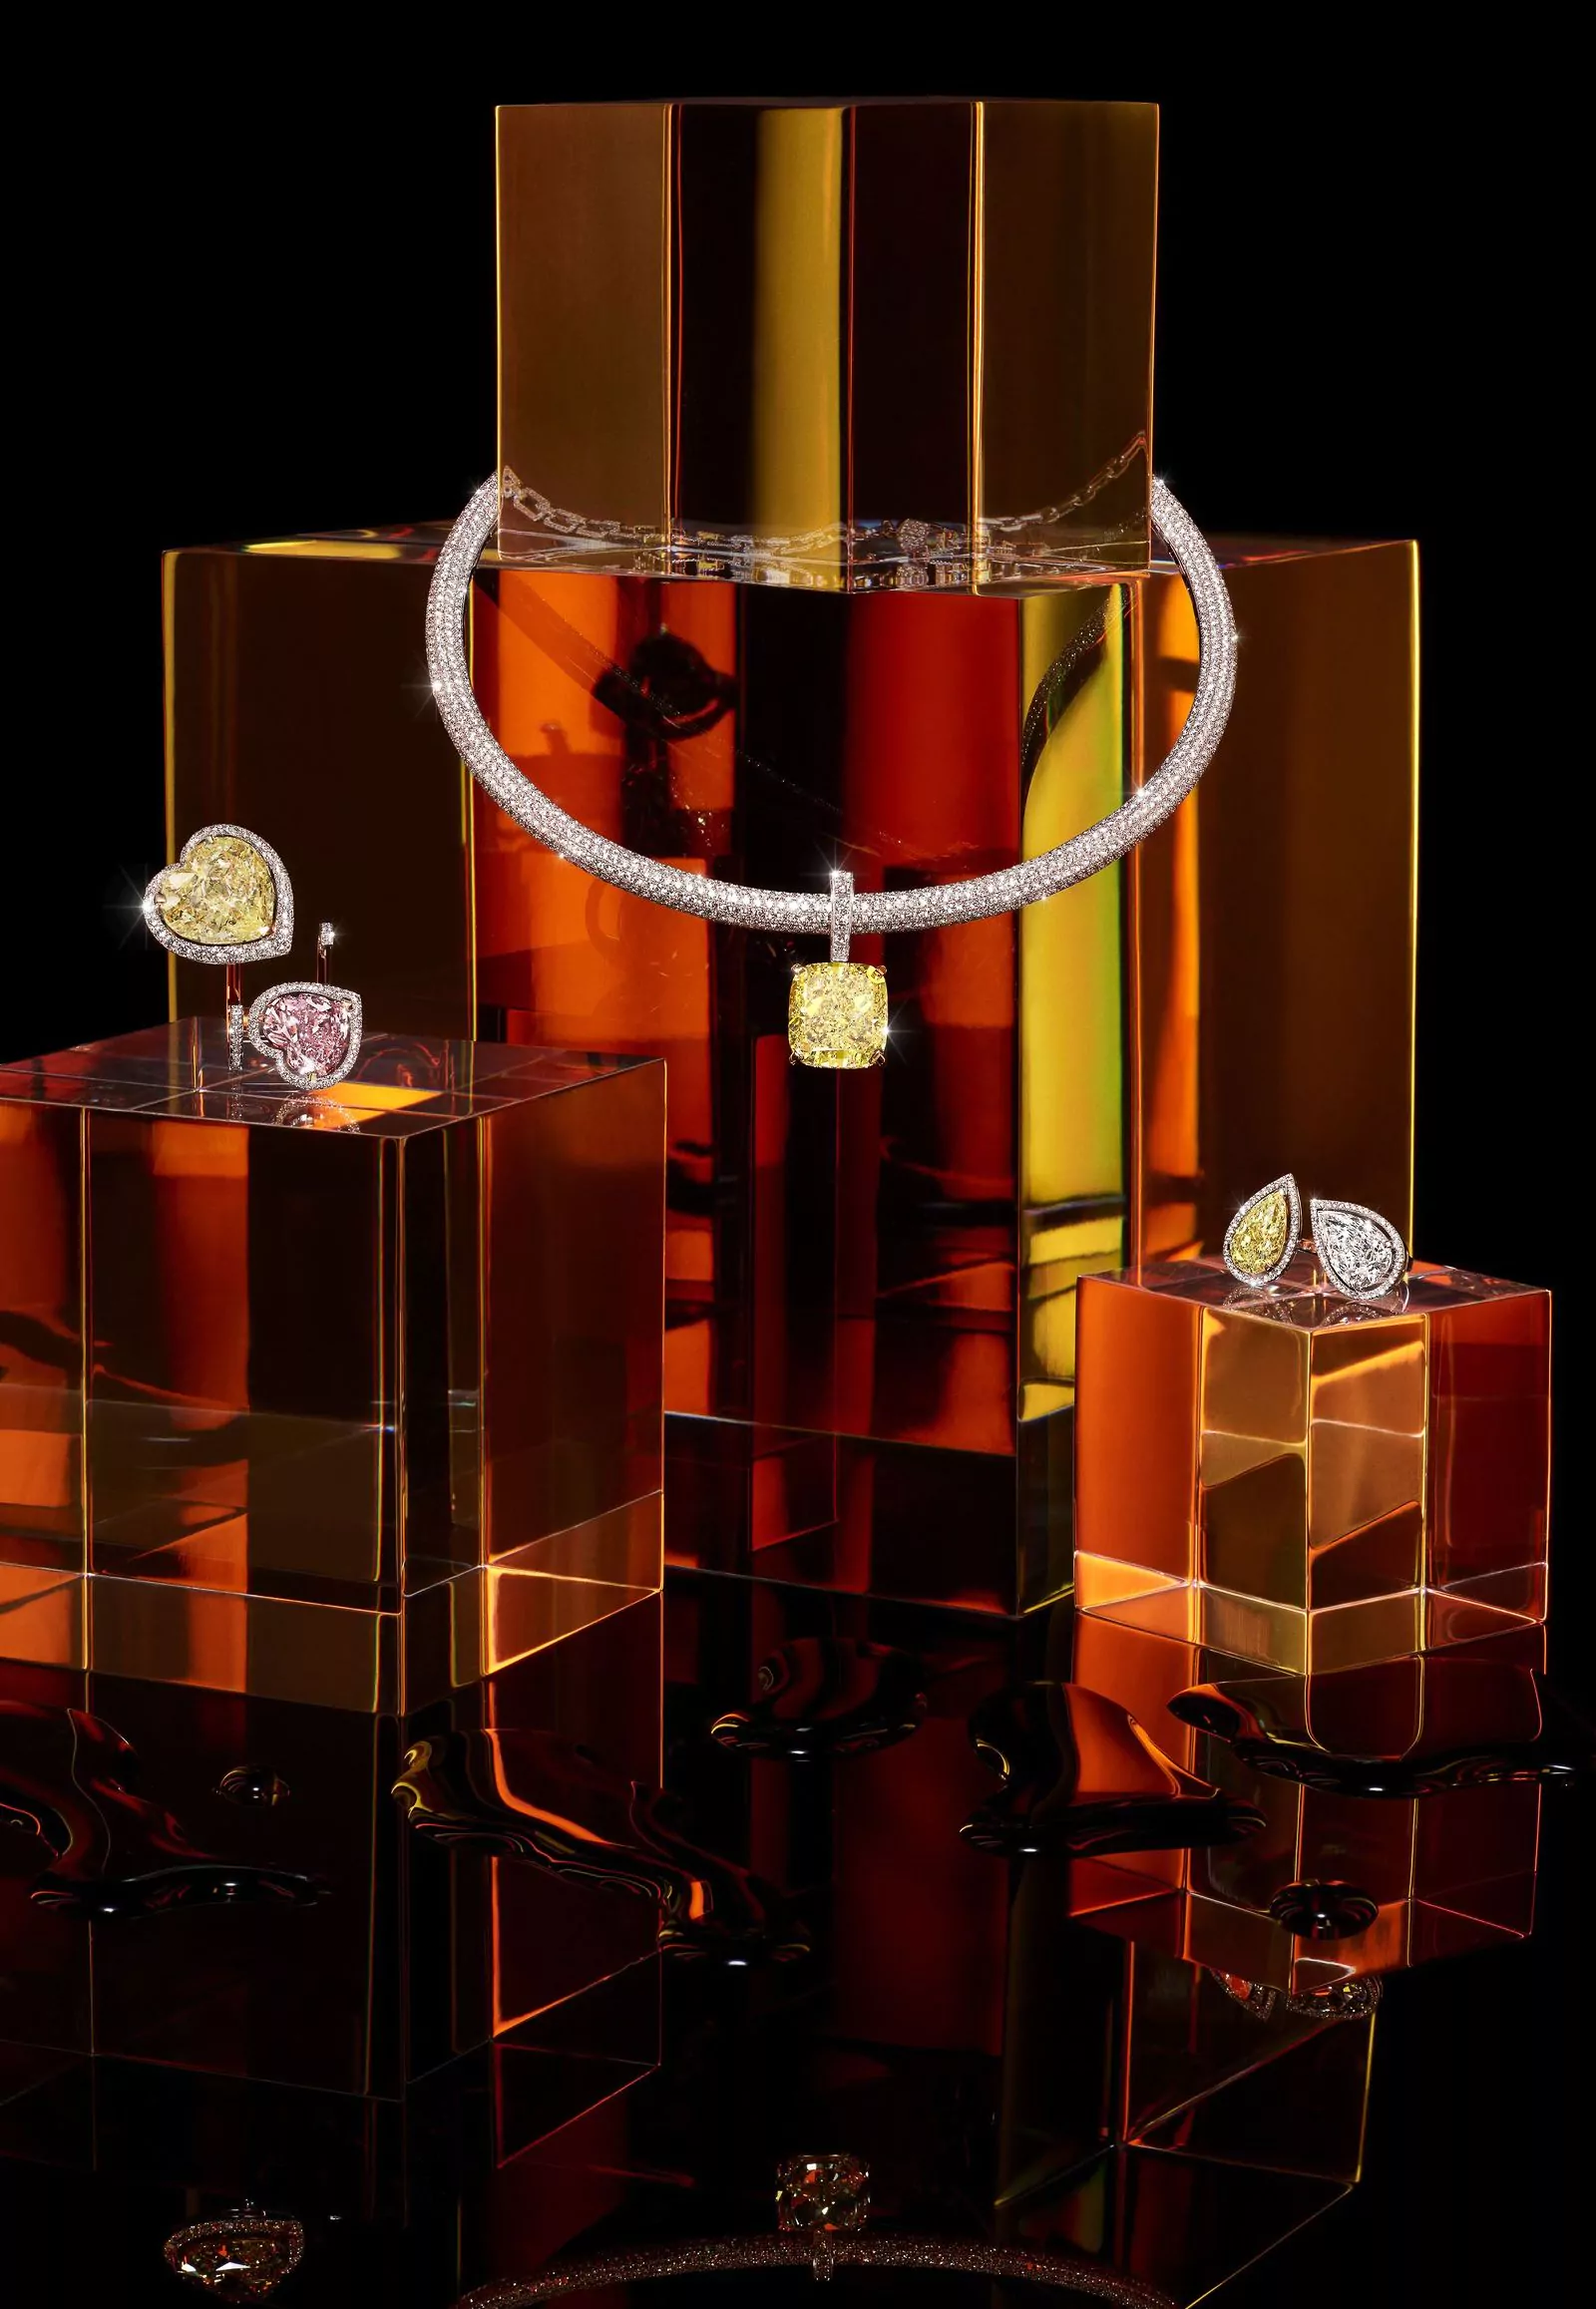 Кольцо Joy Cœur Toi & Moi с бриллиантами весом 25.07 карат, ожерелье Ultimate Party с бриллиантами весом 37.34 карат, кольцо Ultimate Party Toi & Moi с бриллиантами весом 7.31